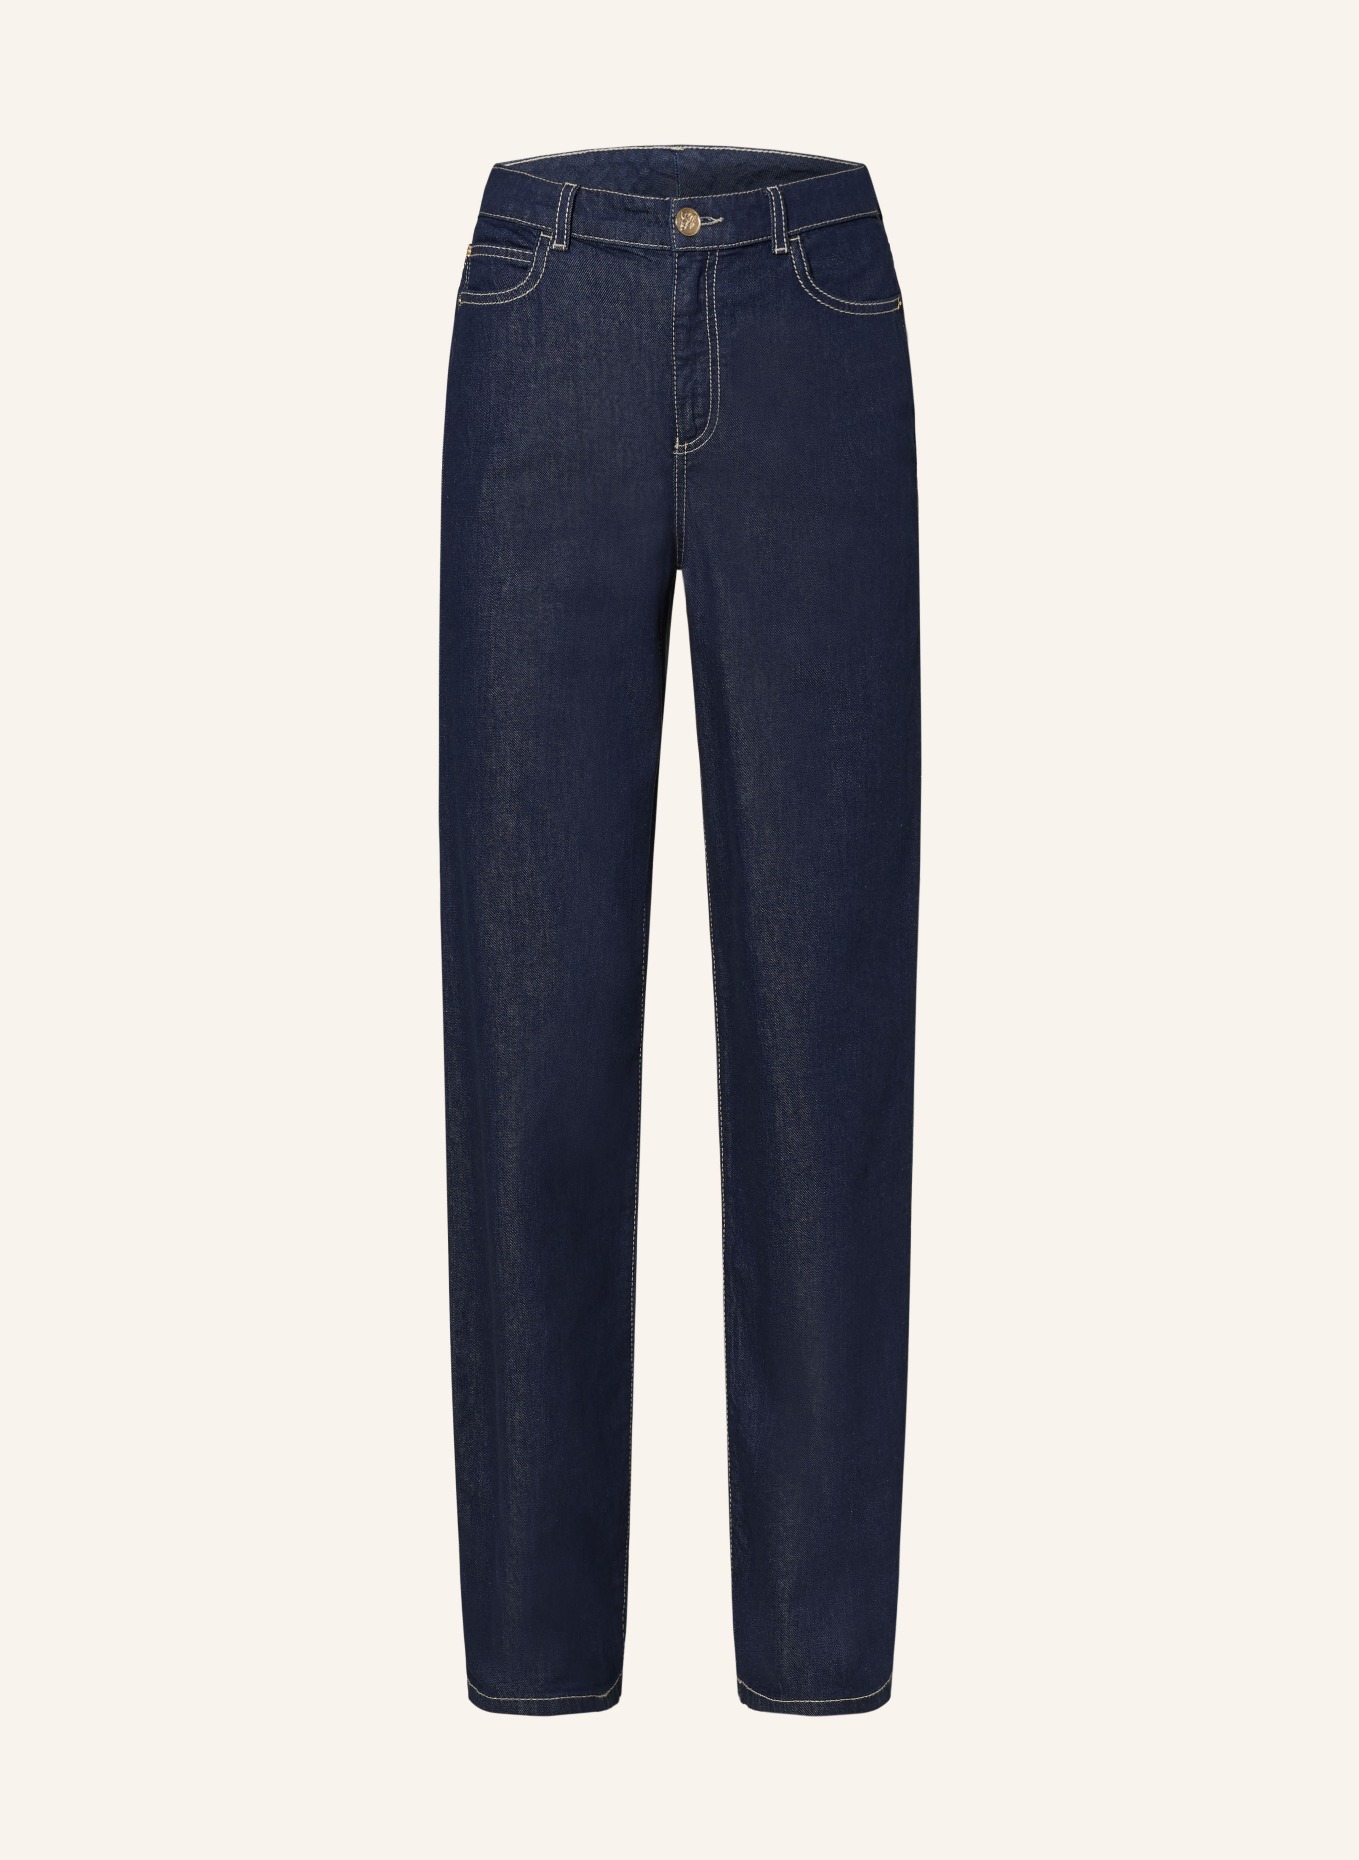 EMPORIO ARMANI Straight Jeans, Farbe: 0941 Denim (Bild 1)